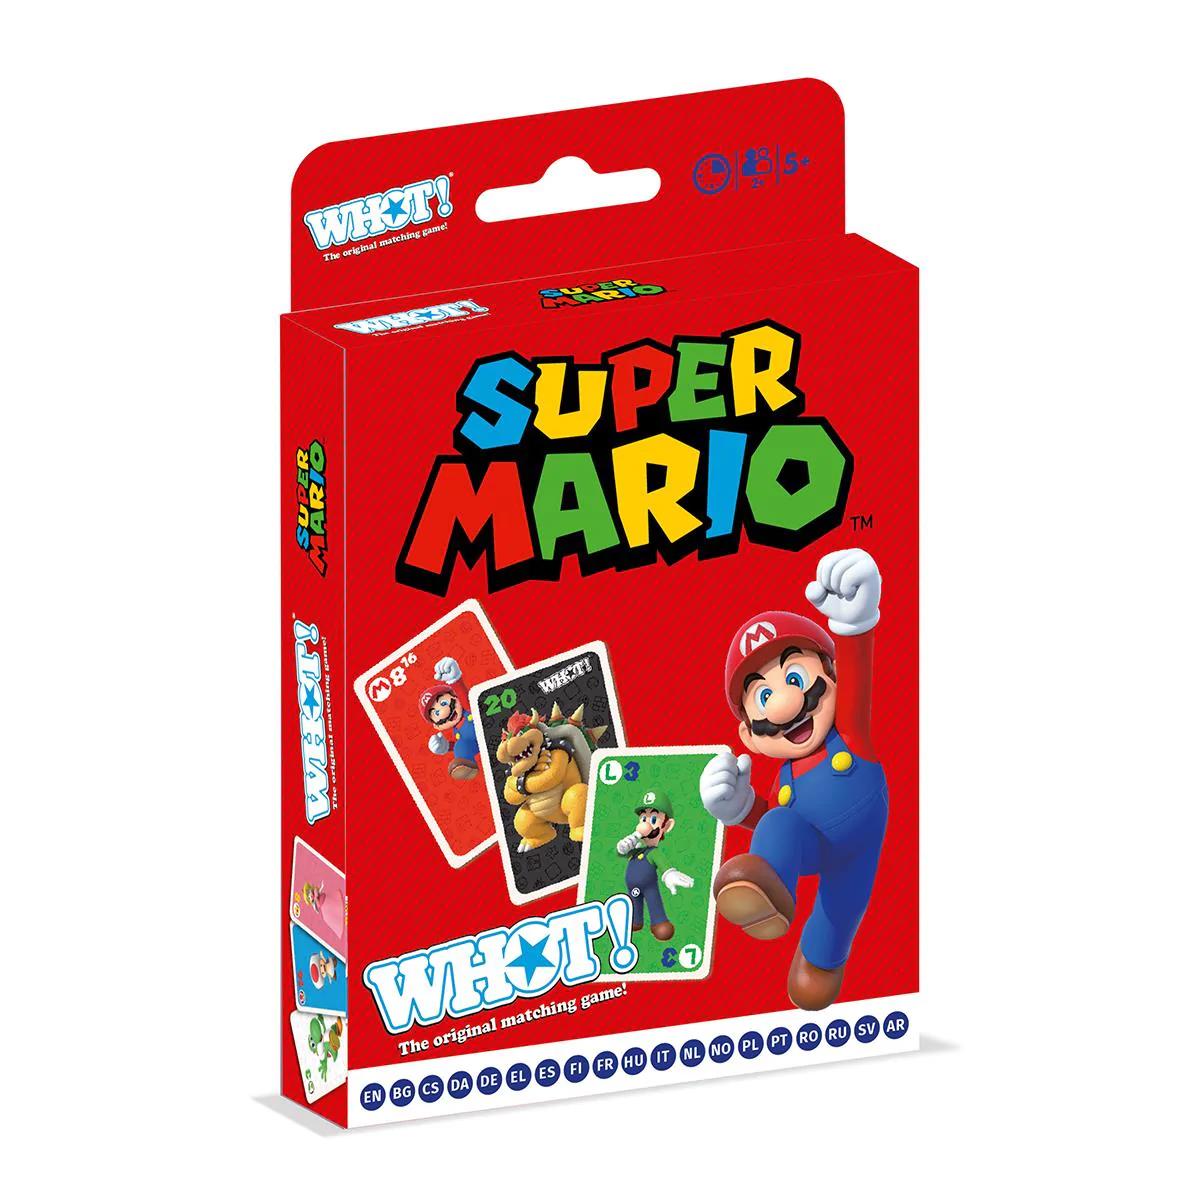 Super Mario Whot